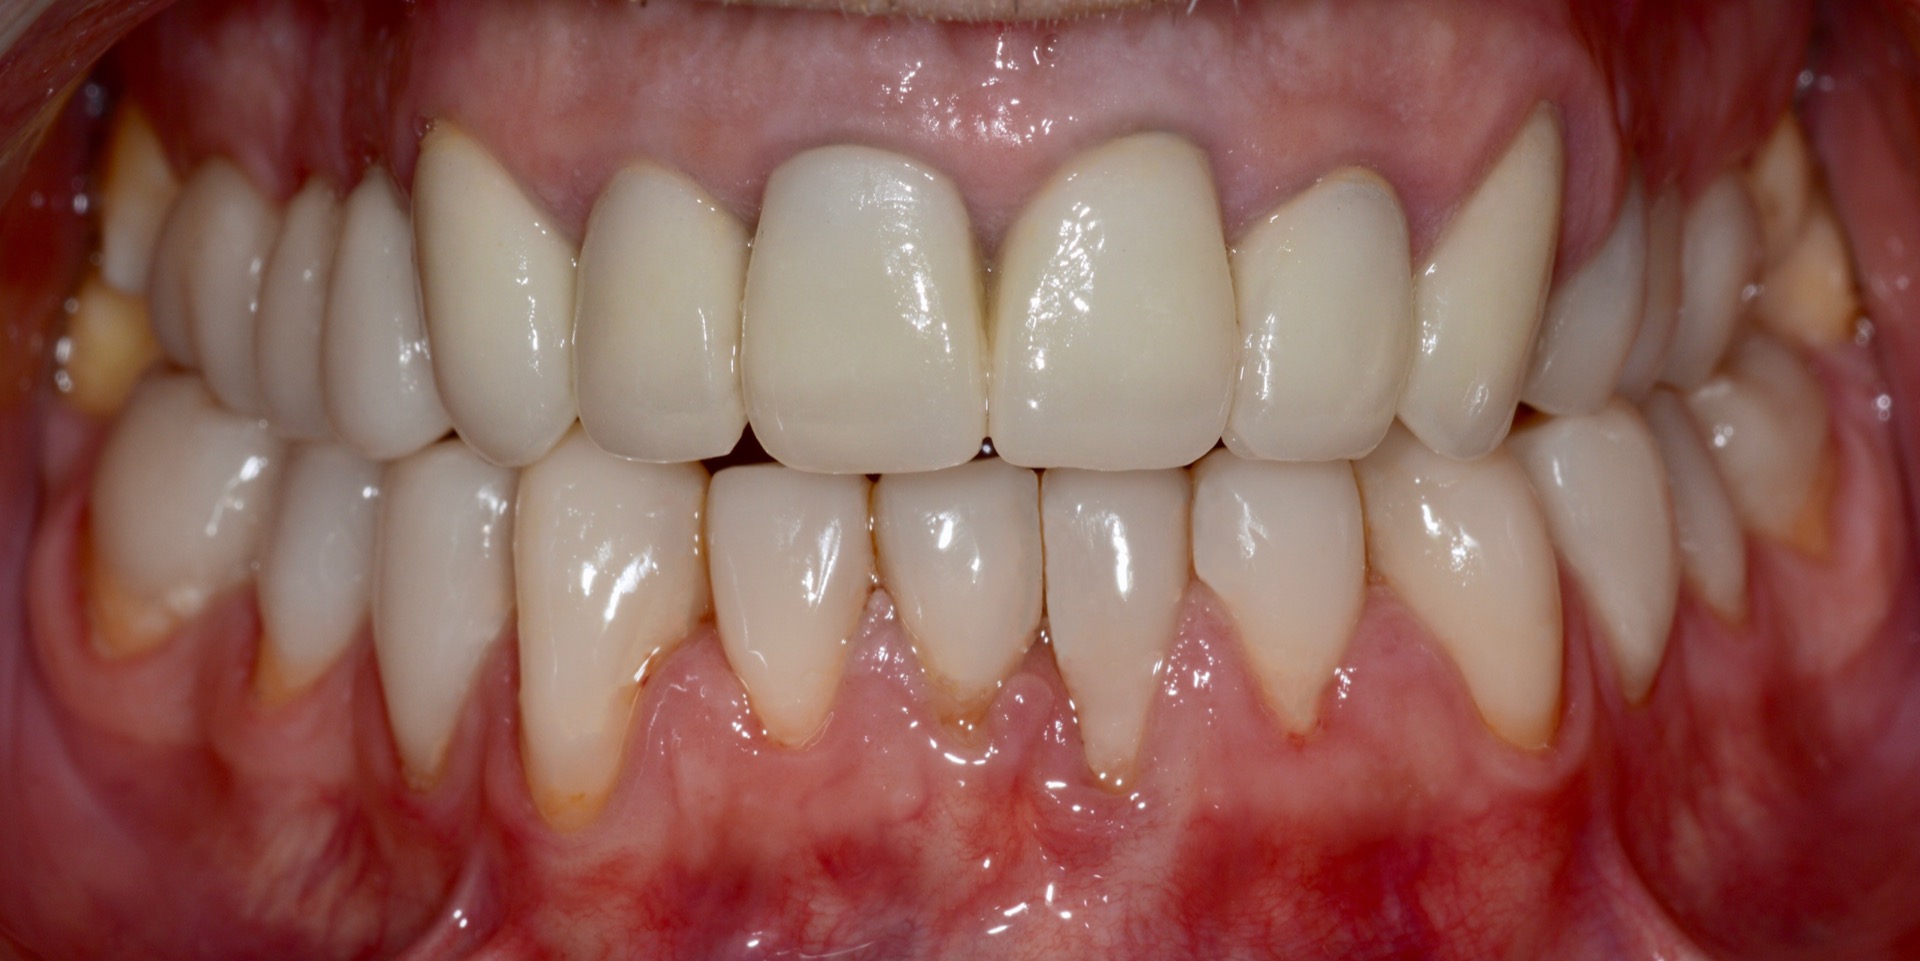 Τελική κατάσταση - Πρόσθια άποψη των αποκαταστάσεων τοποθετημένων στο στόμα - Αποκατάσταση της αισθητικής και της σύγκλεισης του ασθενούς